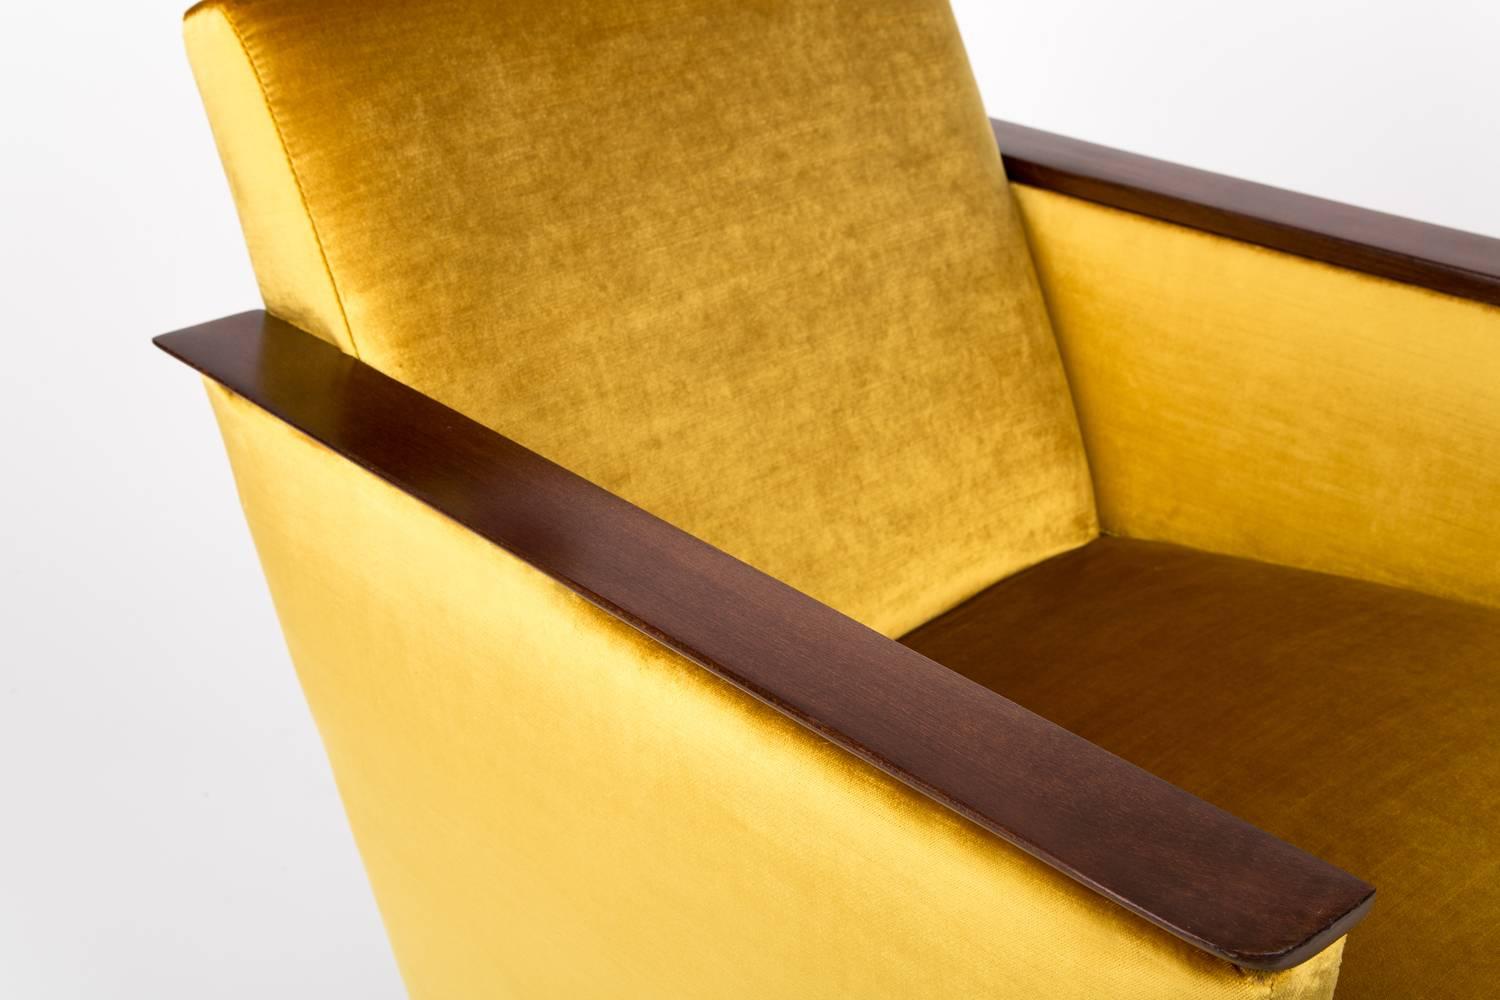 Deutscher Sessel, hergestellt in den 1960er Jahren in Berlin. Der Sessel ist nach einer gründlichen Renovierung der Polsterung und Tischlerei. Der Holzrahmen wird gründlich gereinigt und mit einem seidenmatten Lack in der Farbe einer Nuss überzogen.